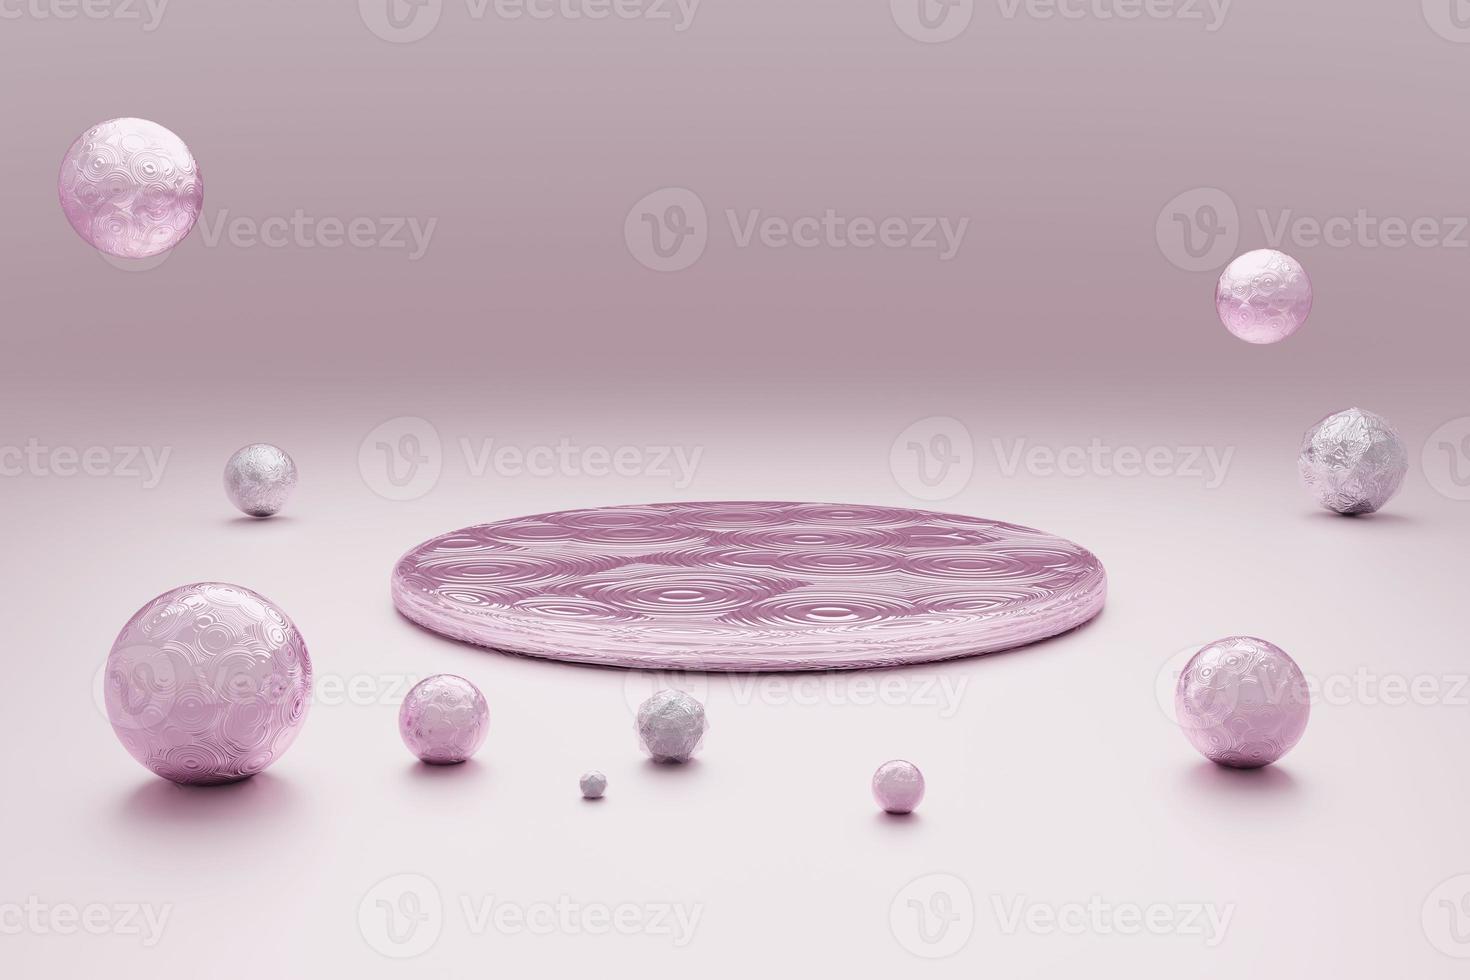 abstrakter pastellrosa Hintergrund mit rundem Podium und Perlen-3D-Rendering foto